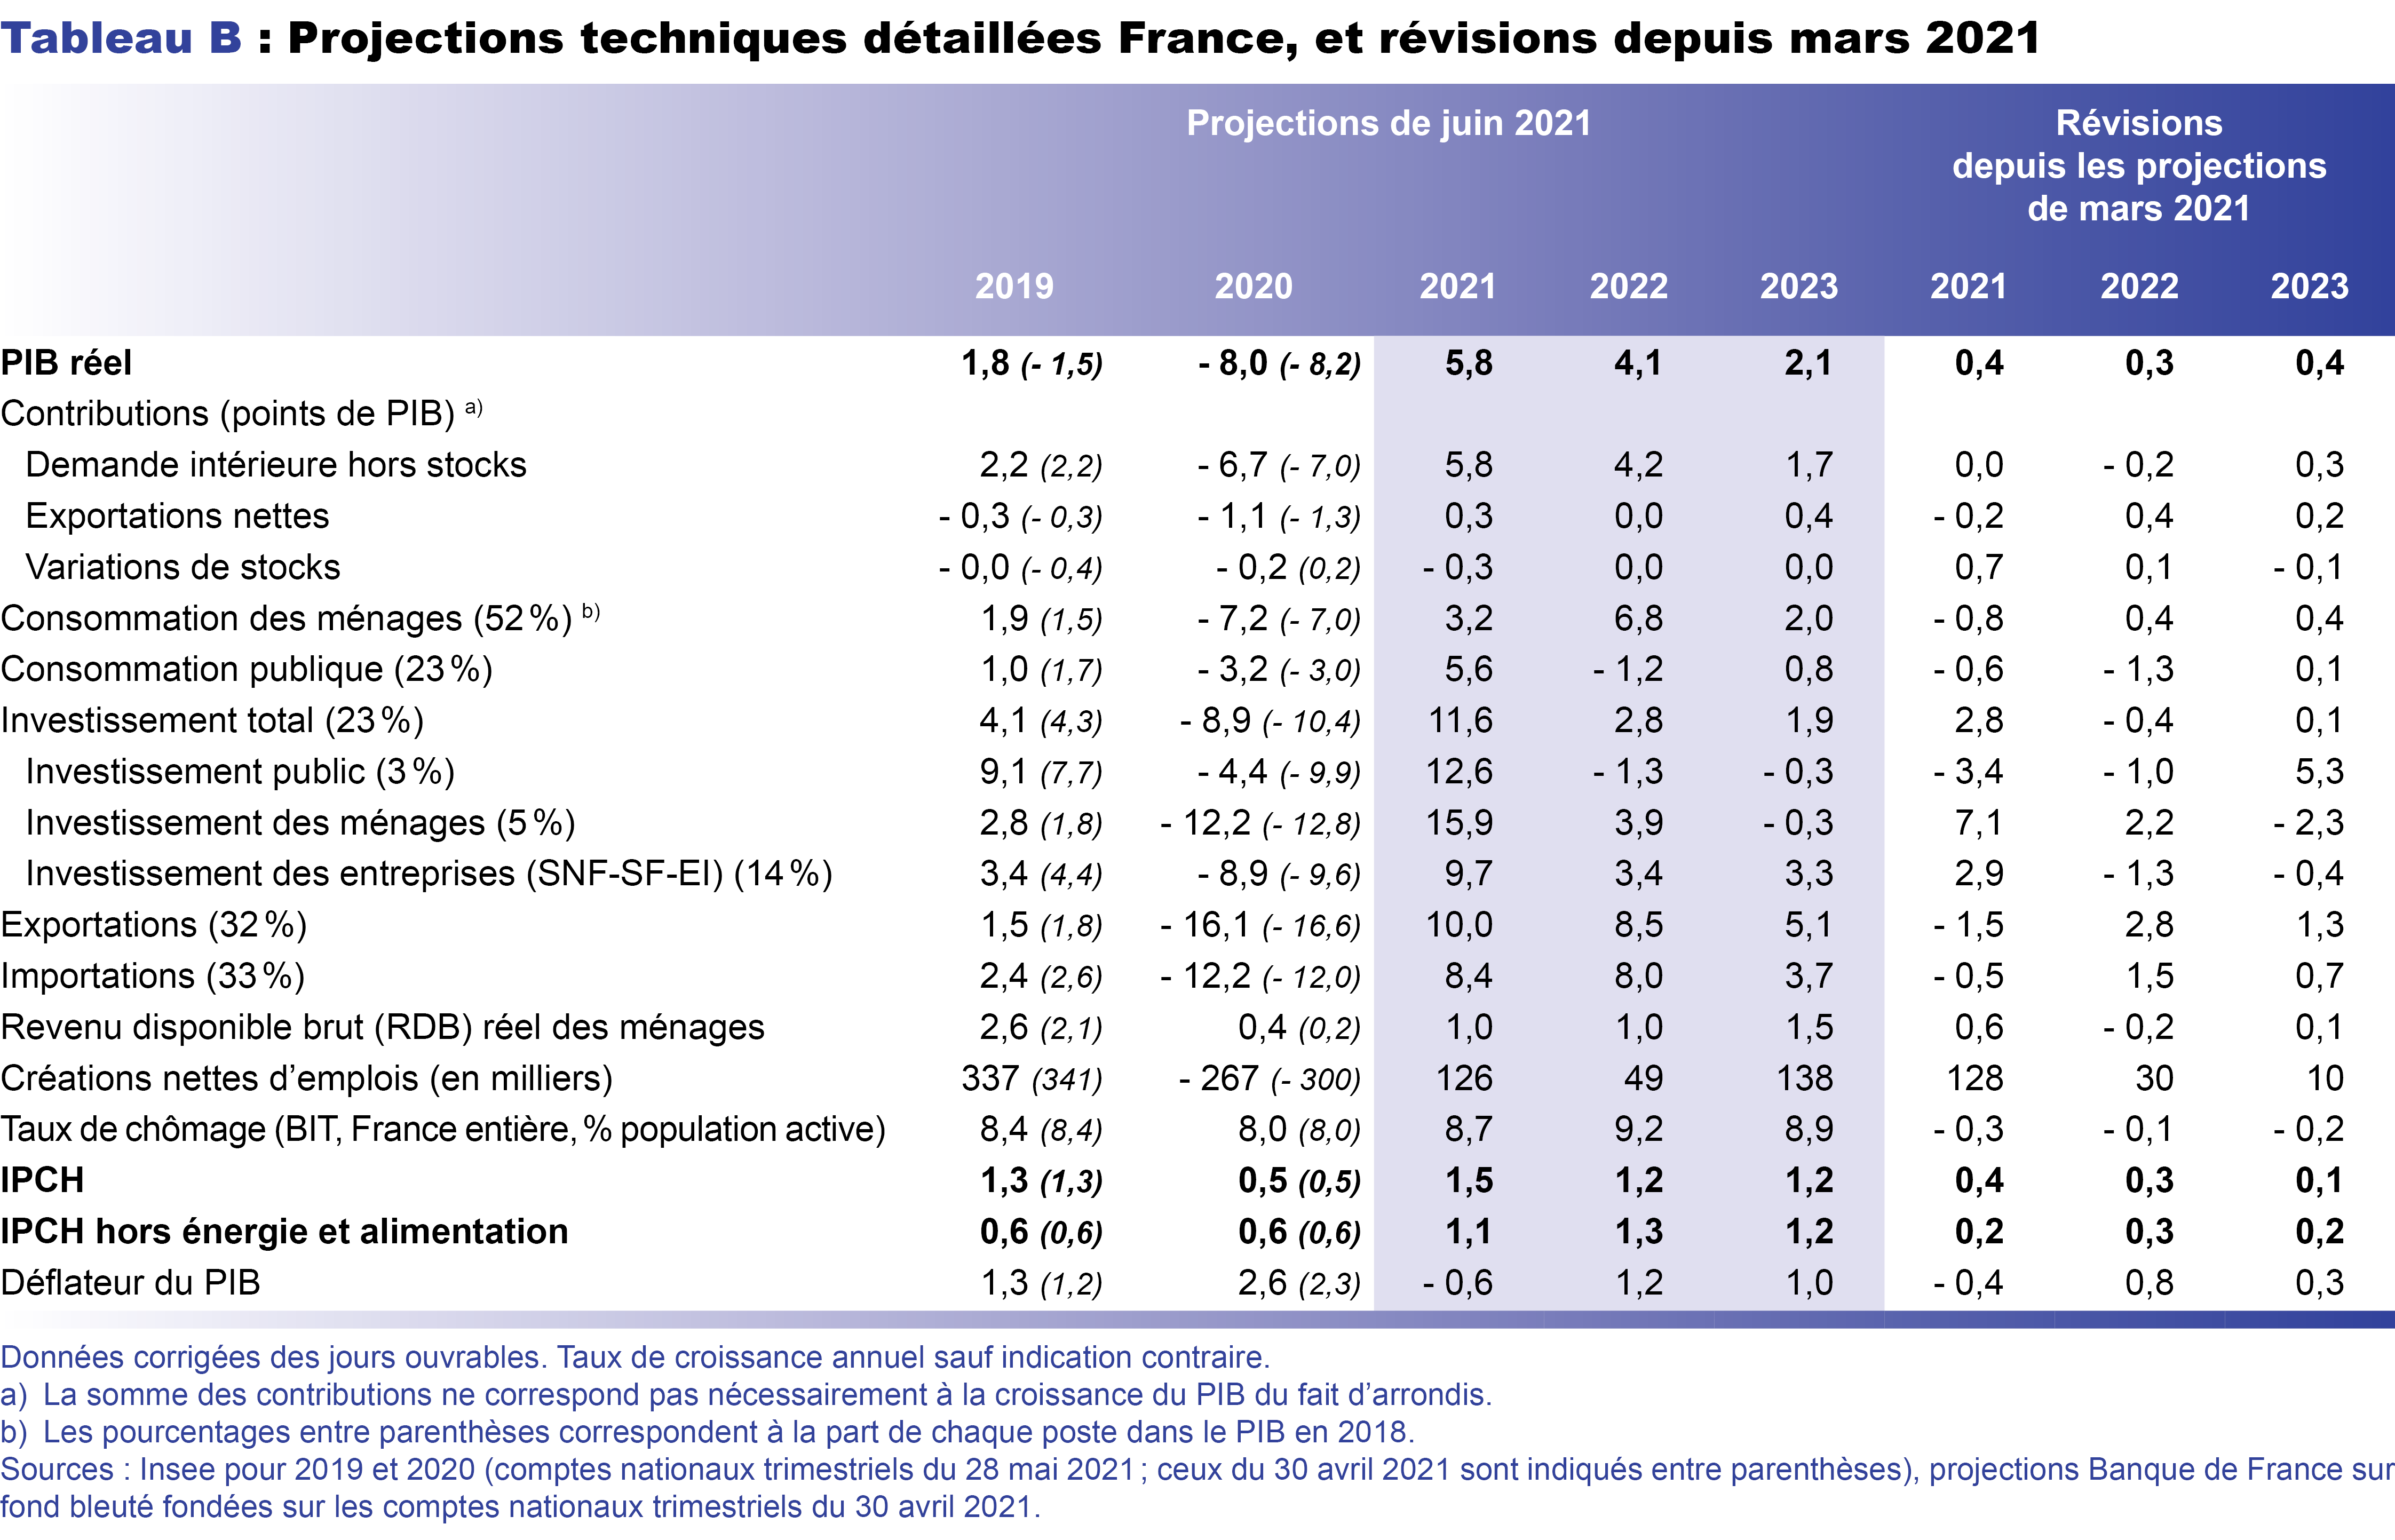 Projections techniques détaillées en France, et révisions depuis mars 2021